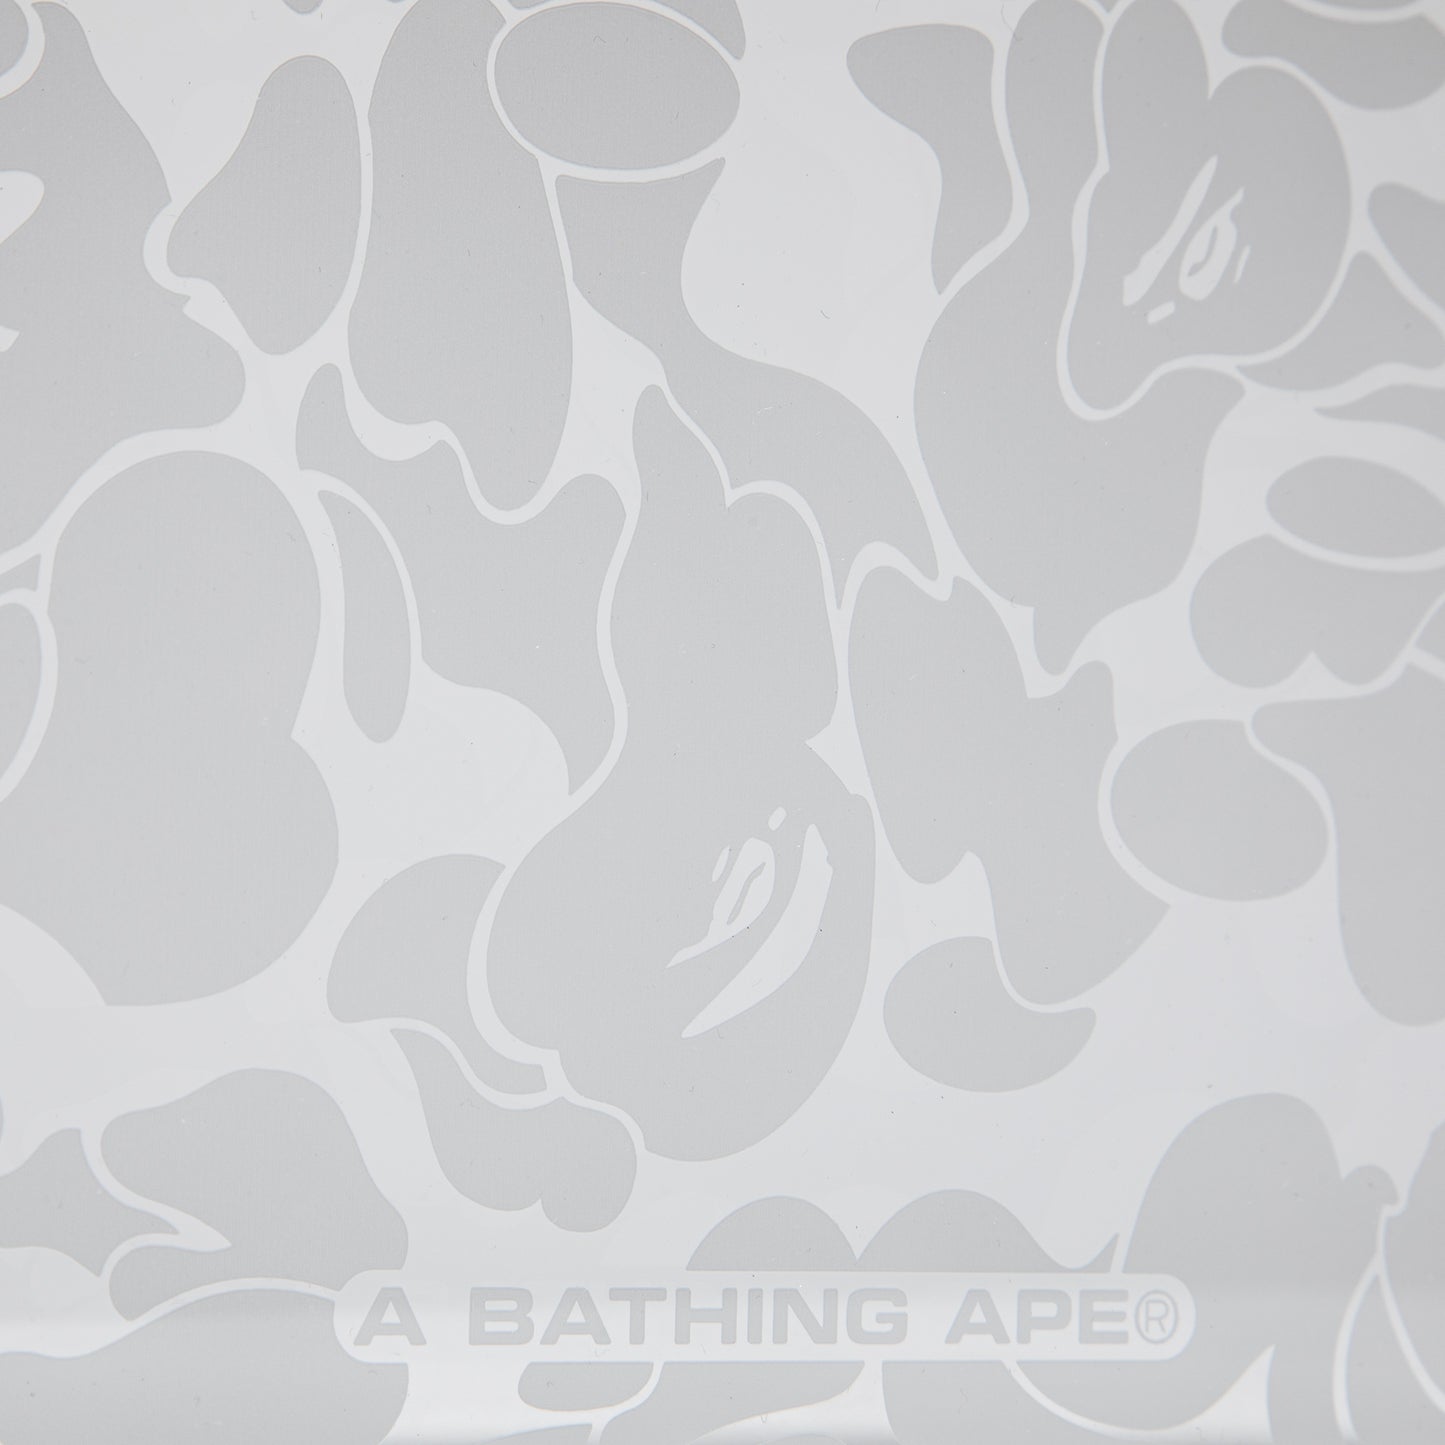 A Bathing Ape ABC Camo Acrylic Photo Frame (Clear)